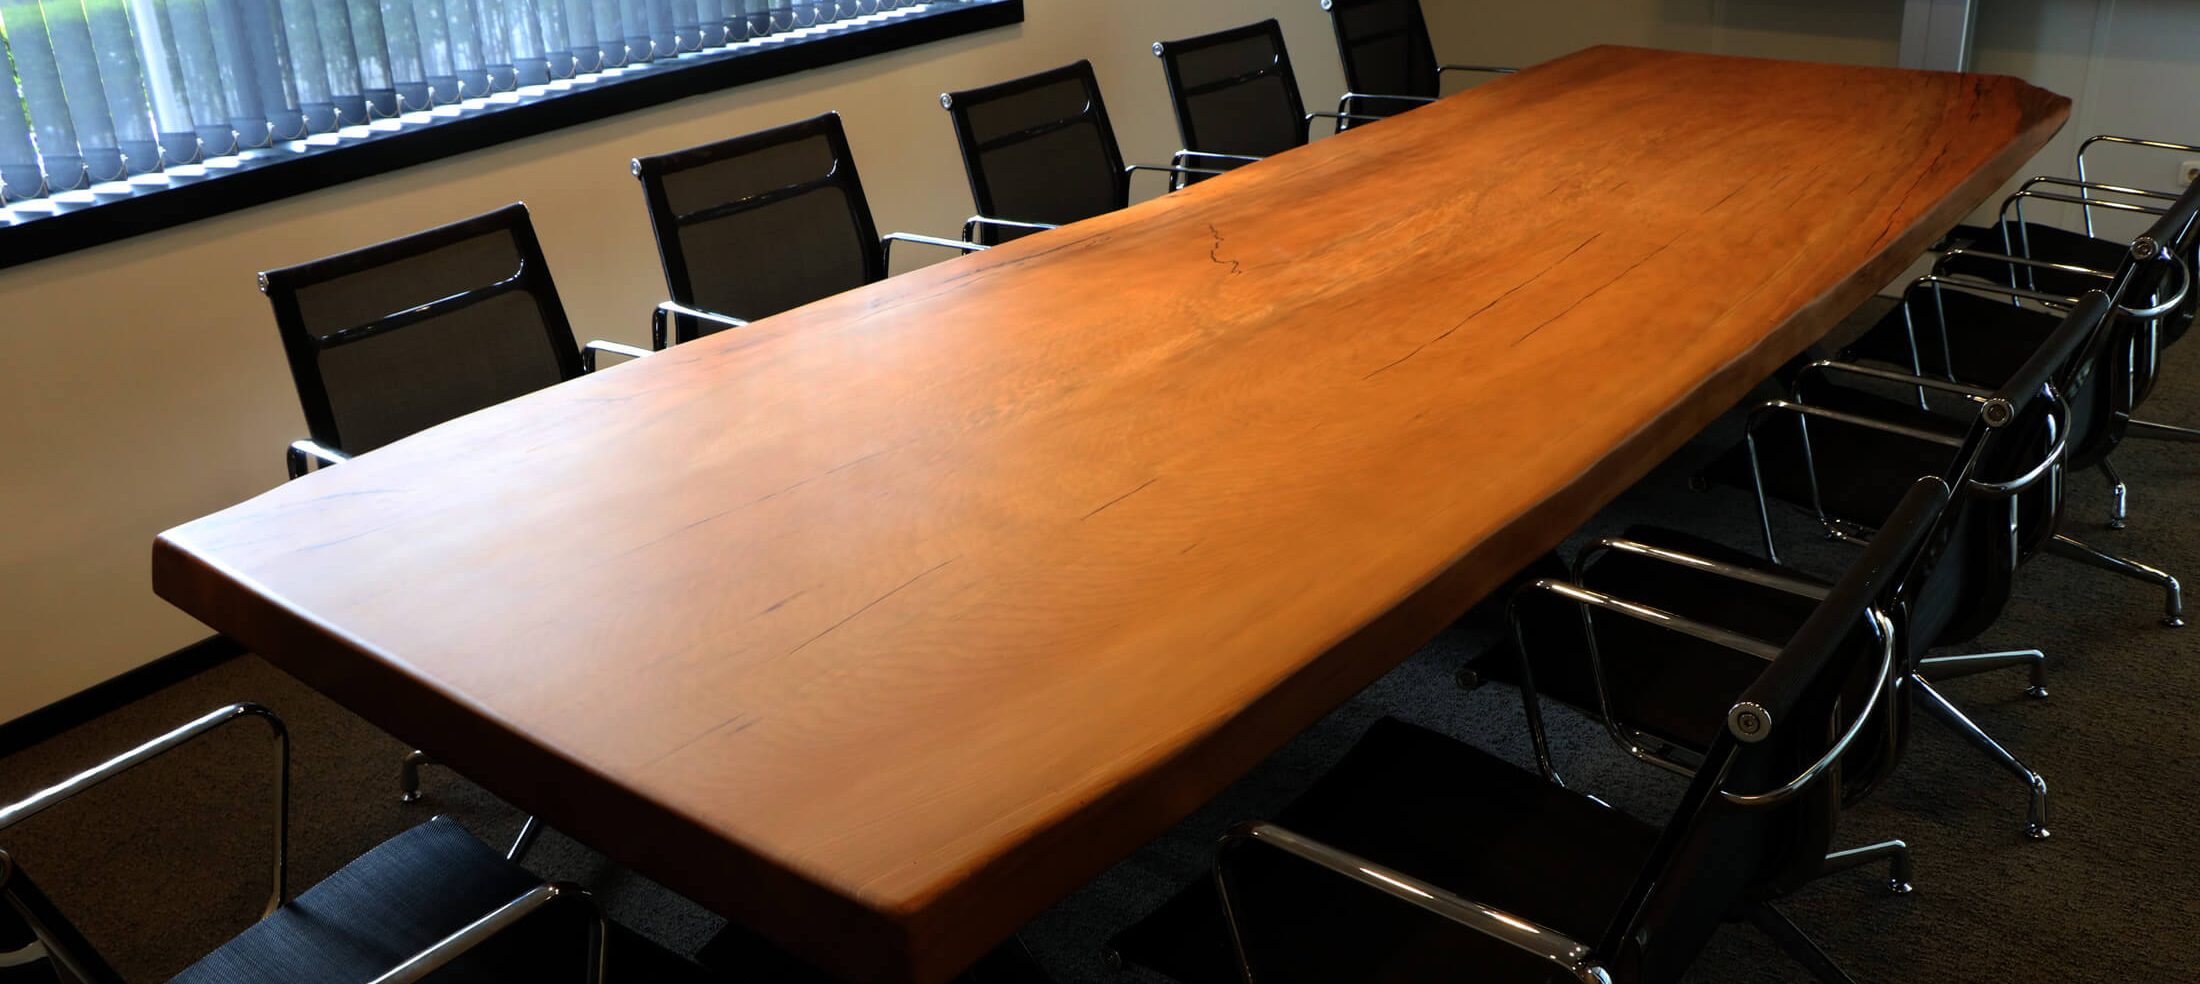 Konferenztisch - Kauri Tisch